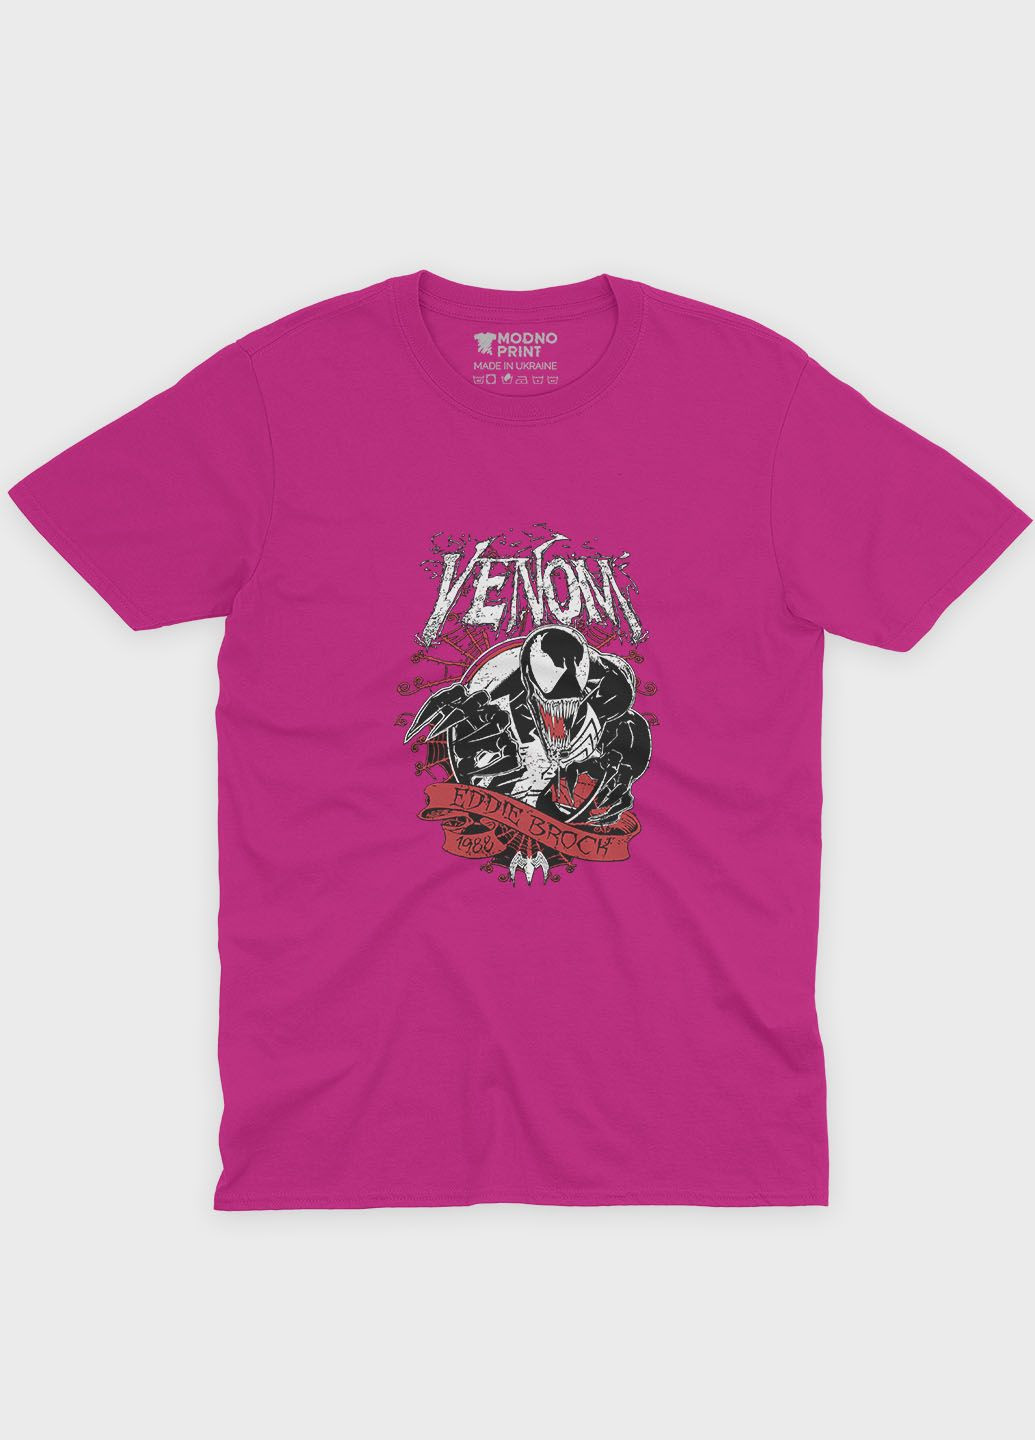 Рожева демісезонна футболка для хлопчика з принтом суперзлодія - веном (ts001-1-fuxj-006-013-027-b) Modno